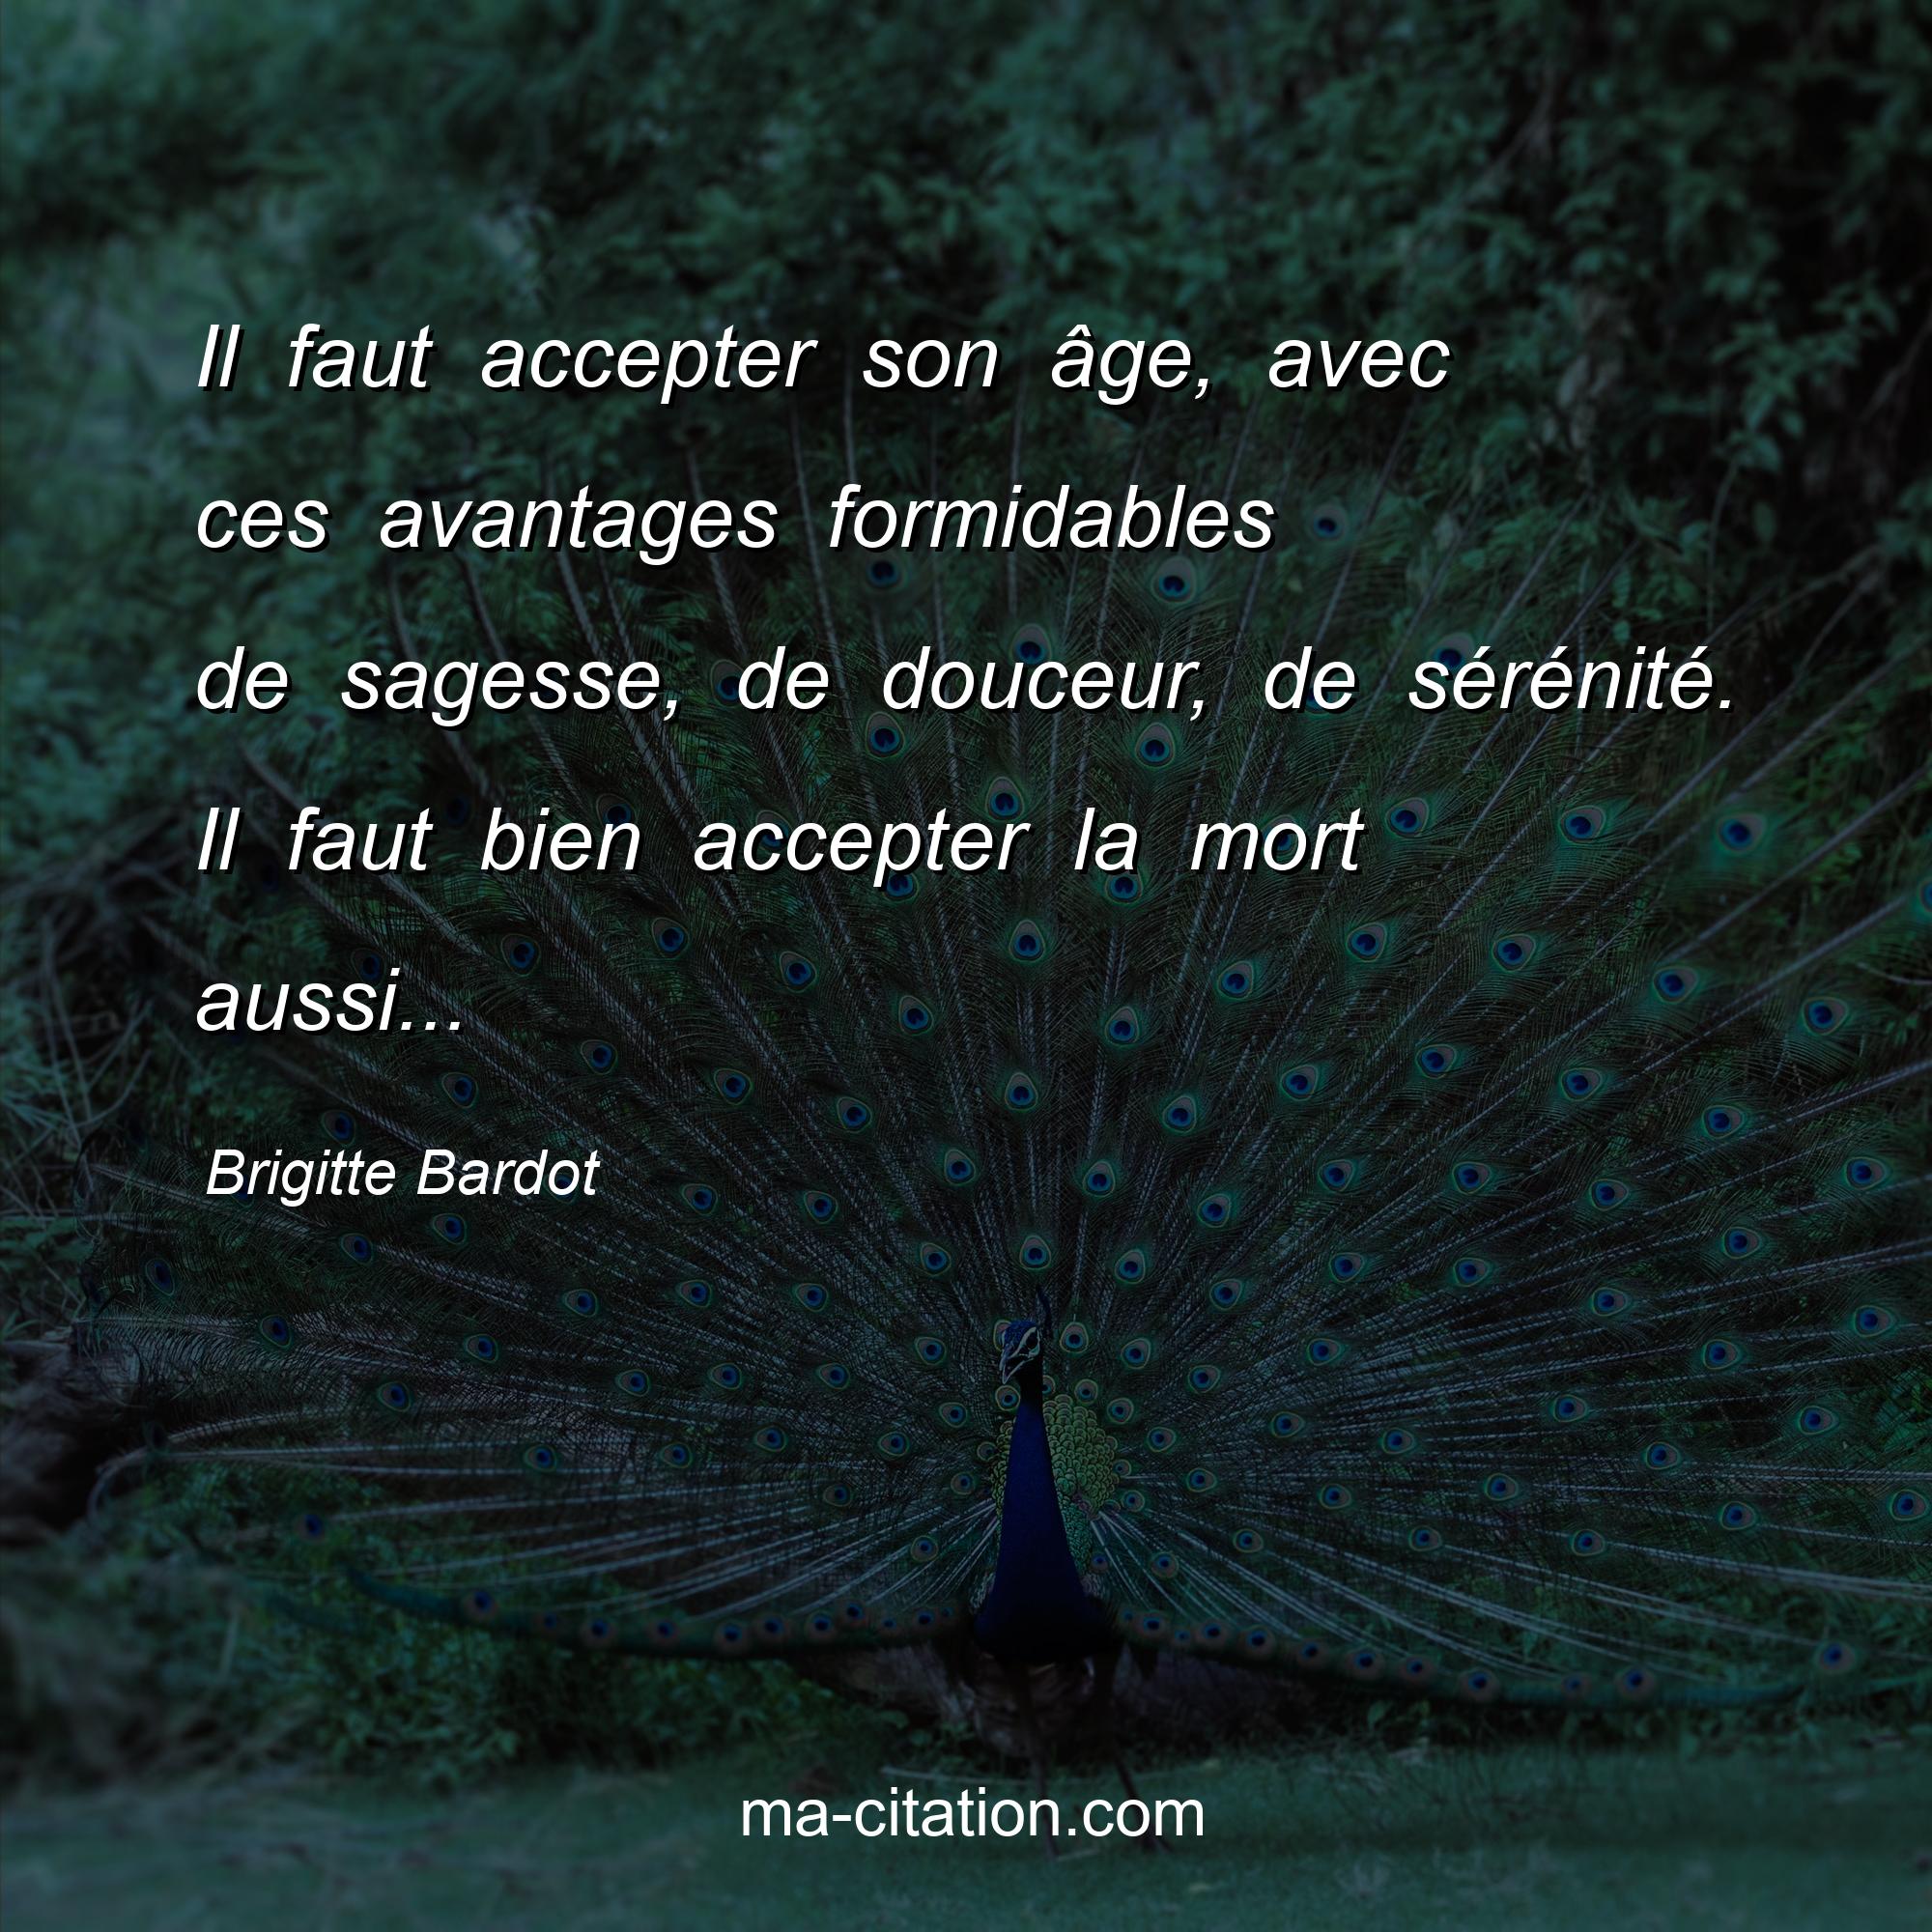 Brigitte Bardot : Il faut accepter son âge, avec ces avantages formidables de sagesse, de douceur, de sérénité. Il faut bien accepter la mort aussi...